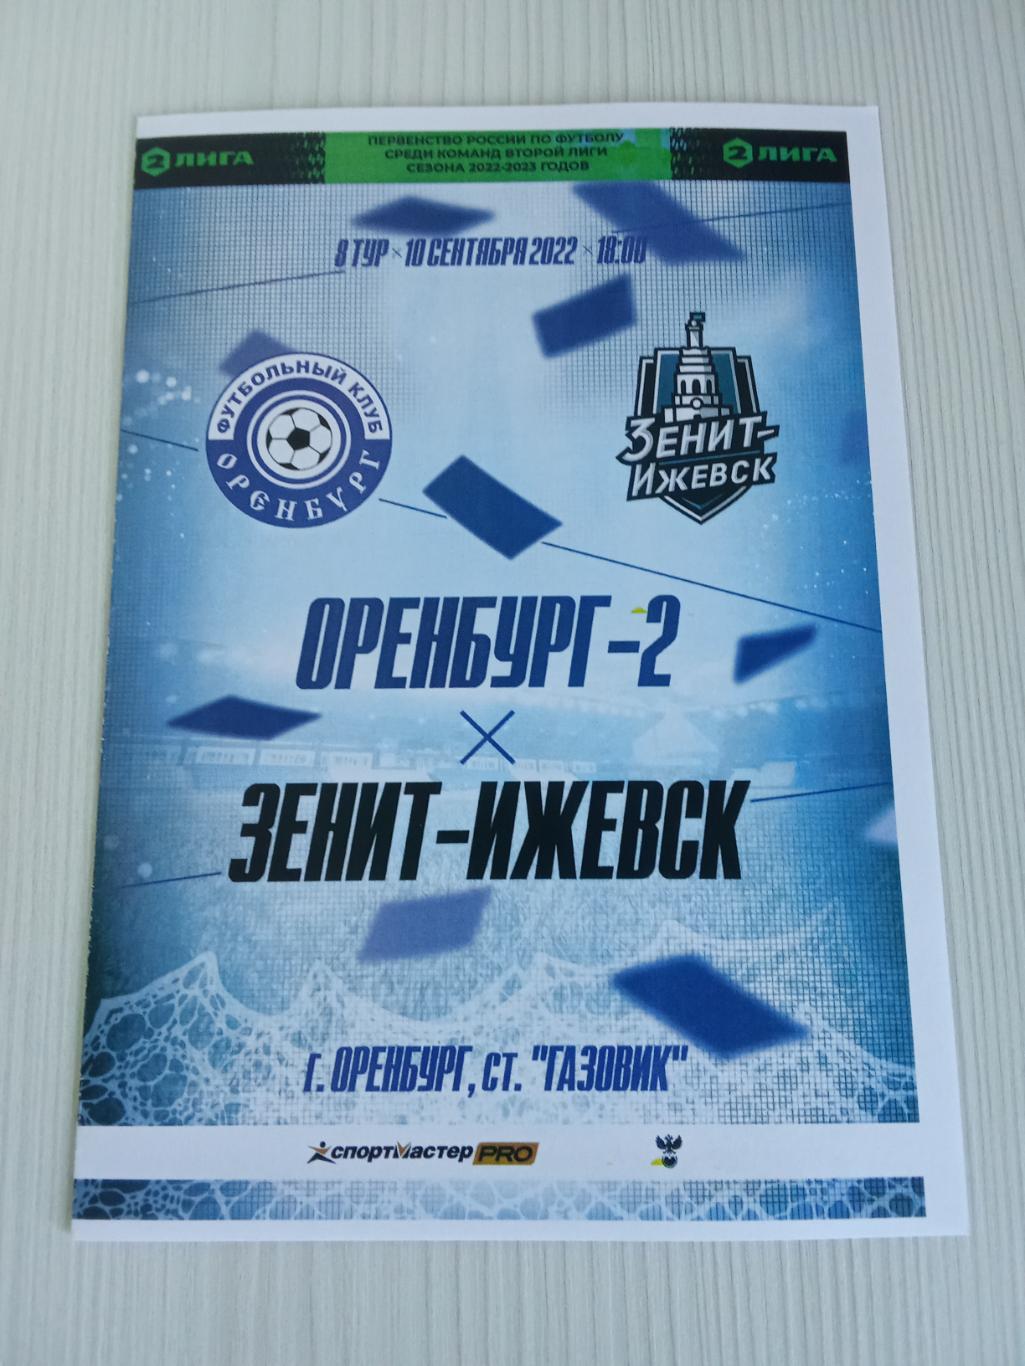 2 Лига 2022-2023 Оренбург -2- Зенит -Ижевск.